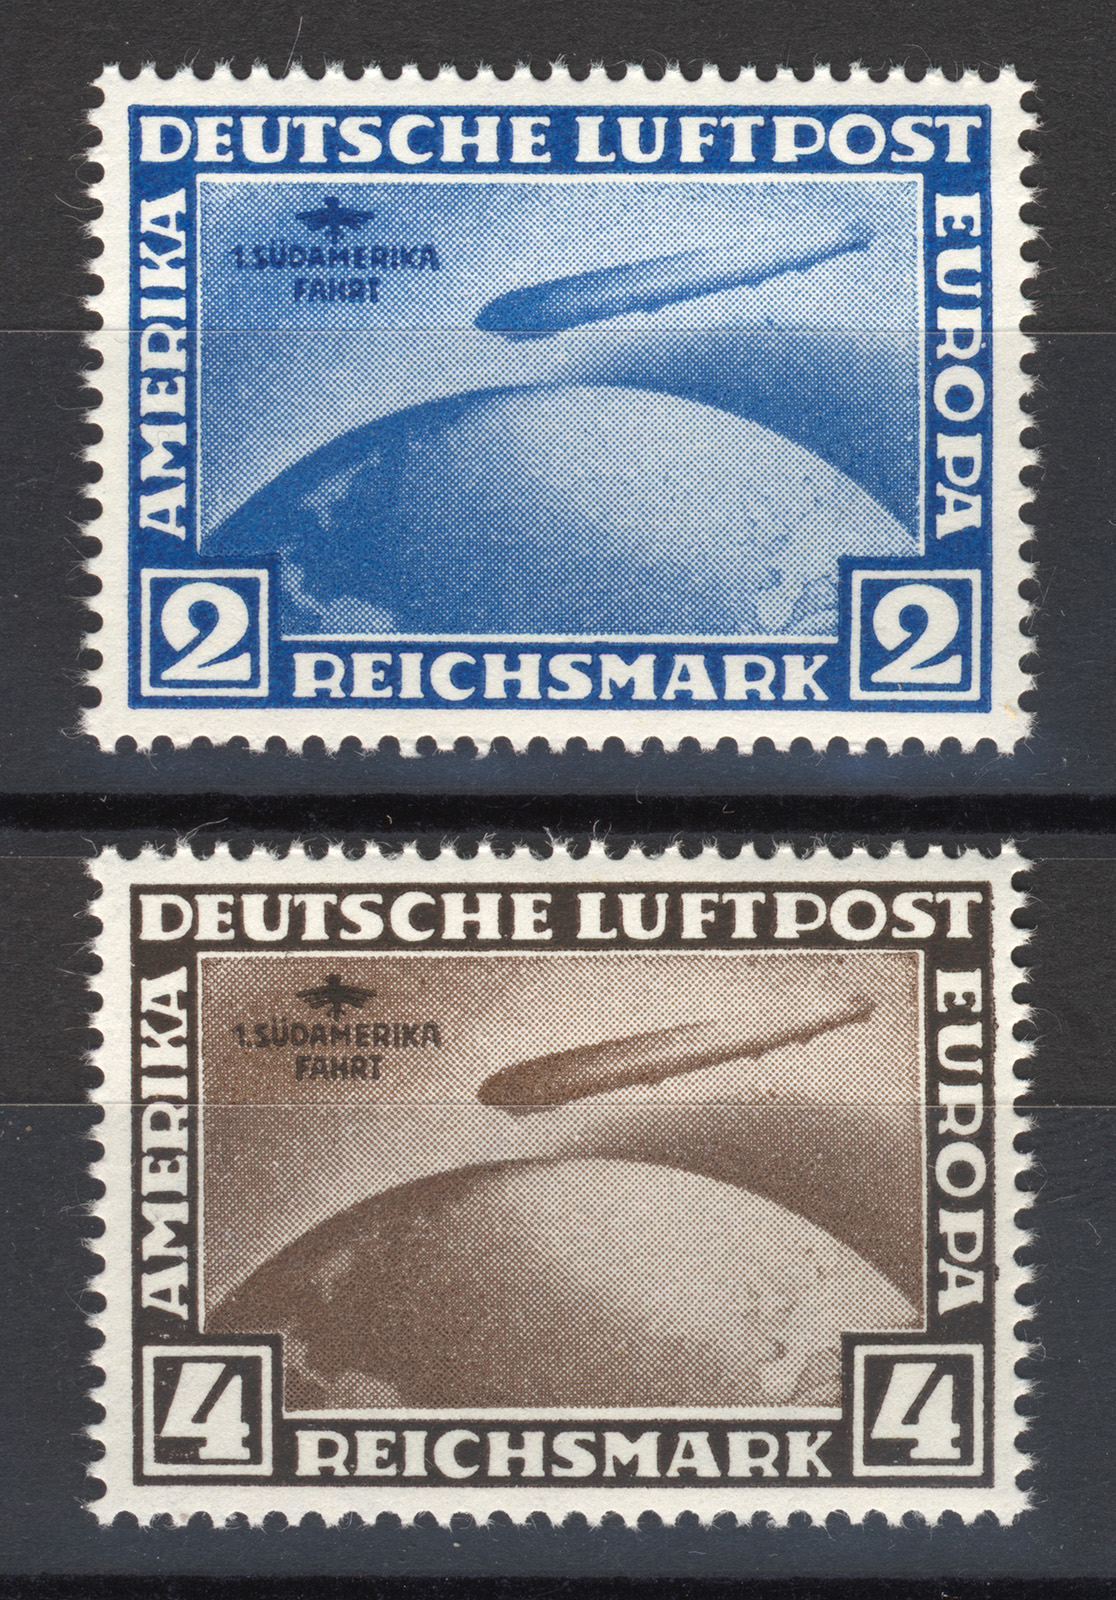 Sie erhalten den Zeppelin Satz: Südamerika-Fahrt als Nachdrucke / Reproduktion zu den Originalmarken aus dem Deutschen Reich von 1930